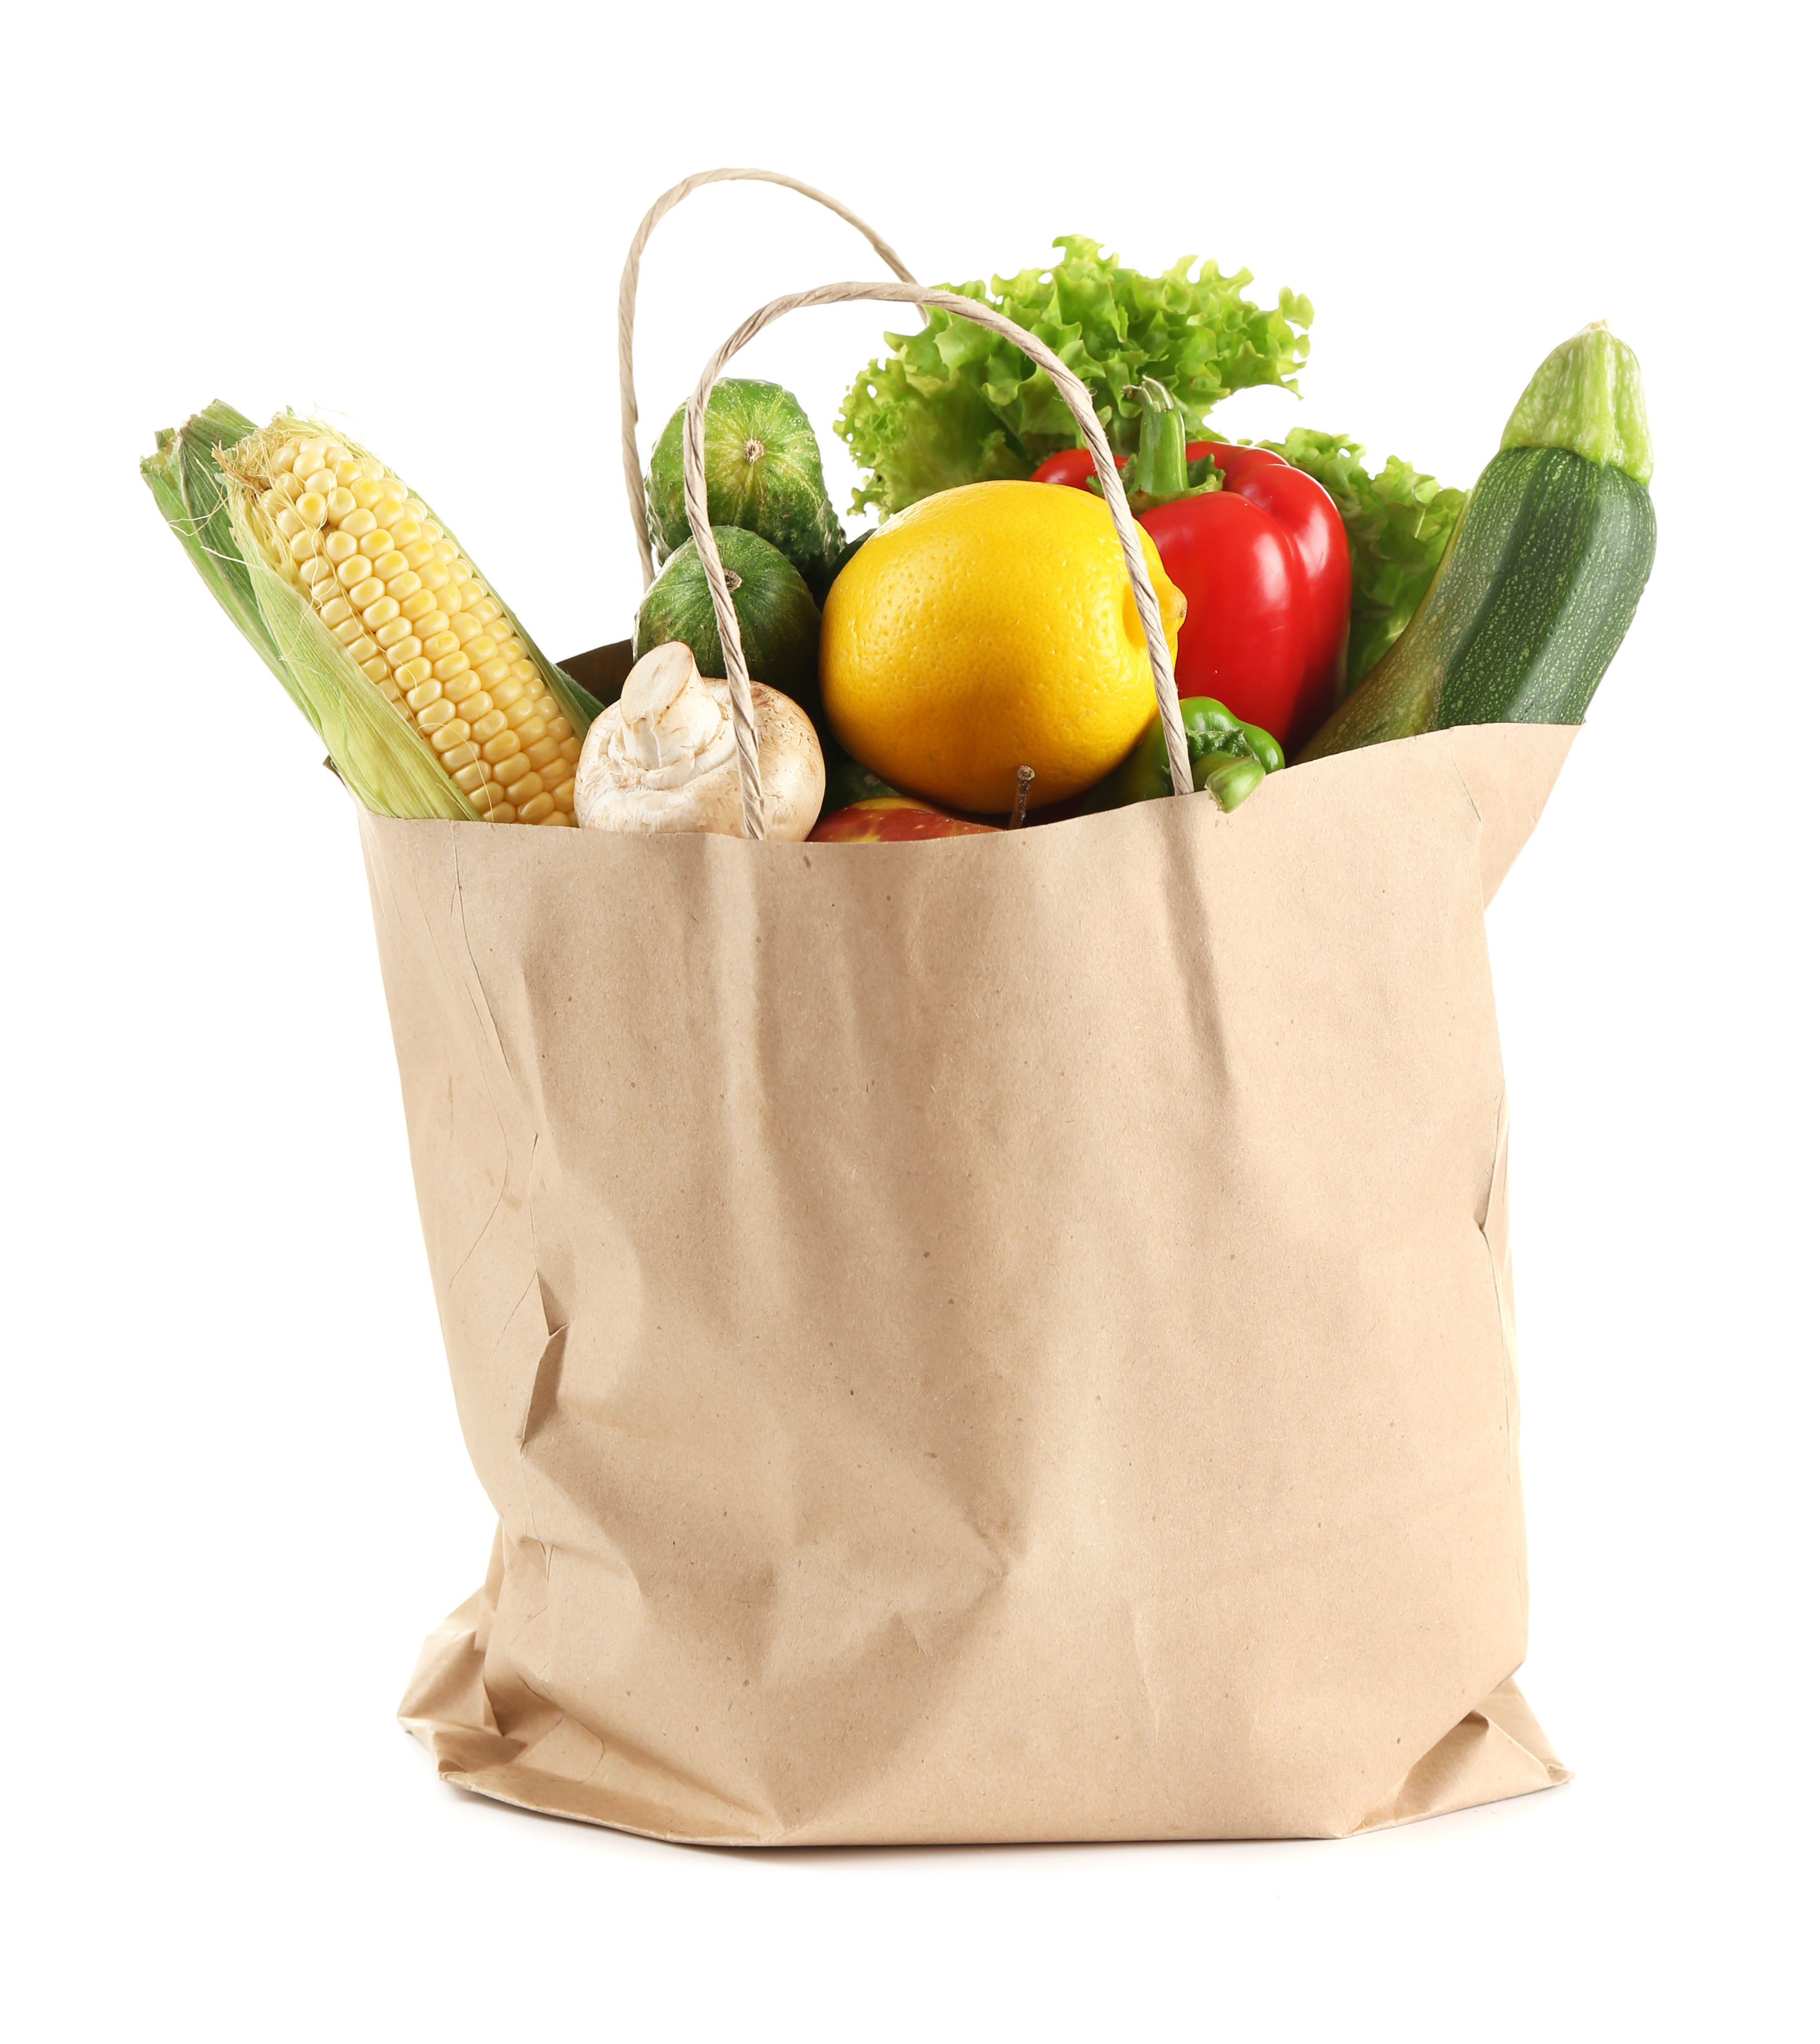 Paper bag of vegetables